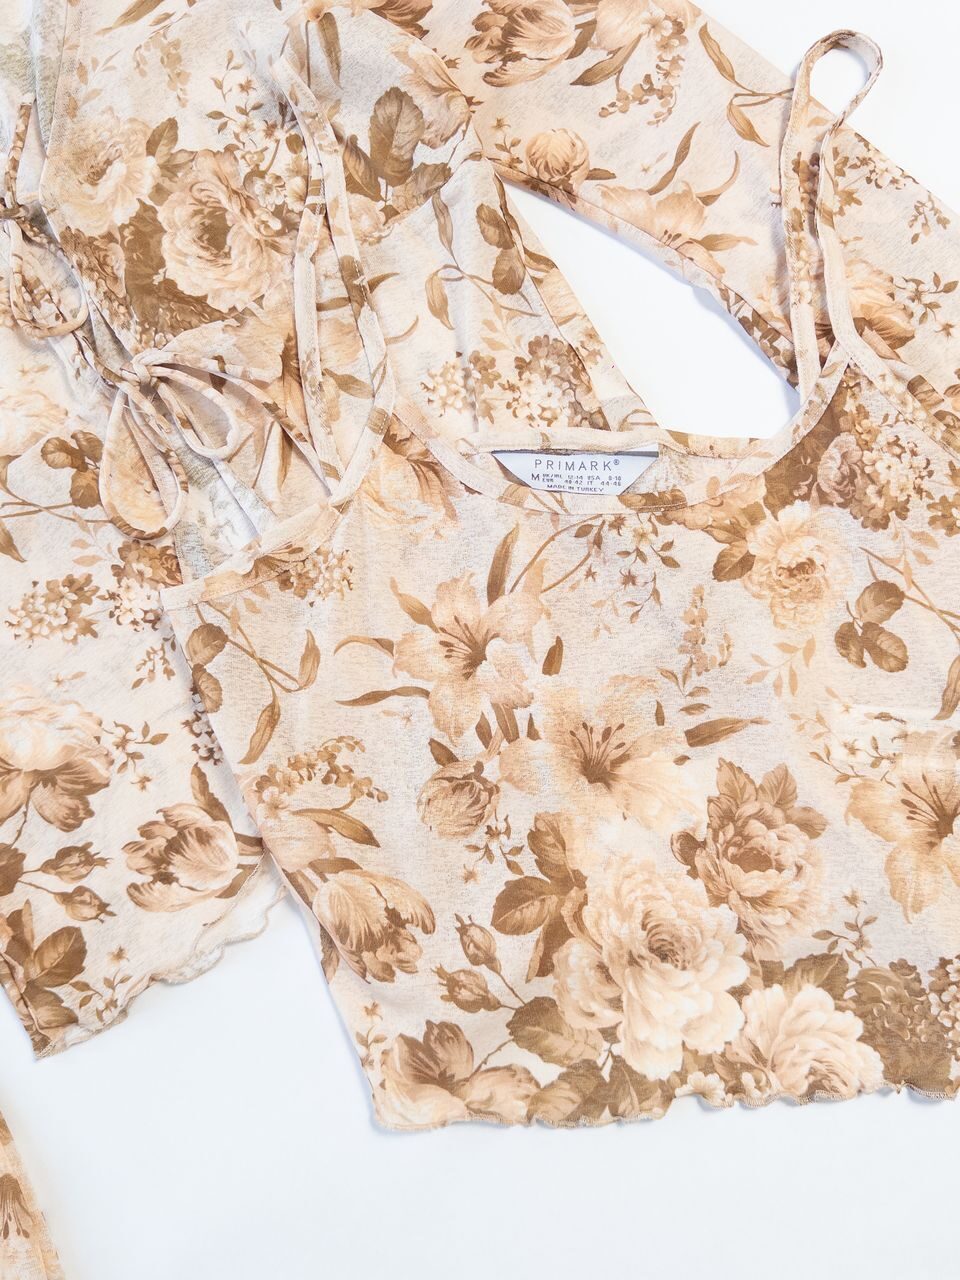 Комплект блуза на завязке + топ укороченный на бретелях цвет бежевый принт цветы размер EUR 40-42 (rus 46-48) Primark